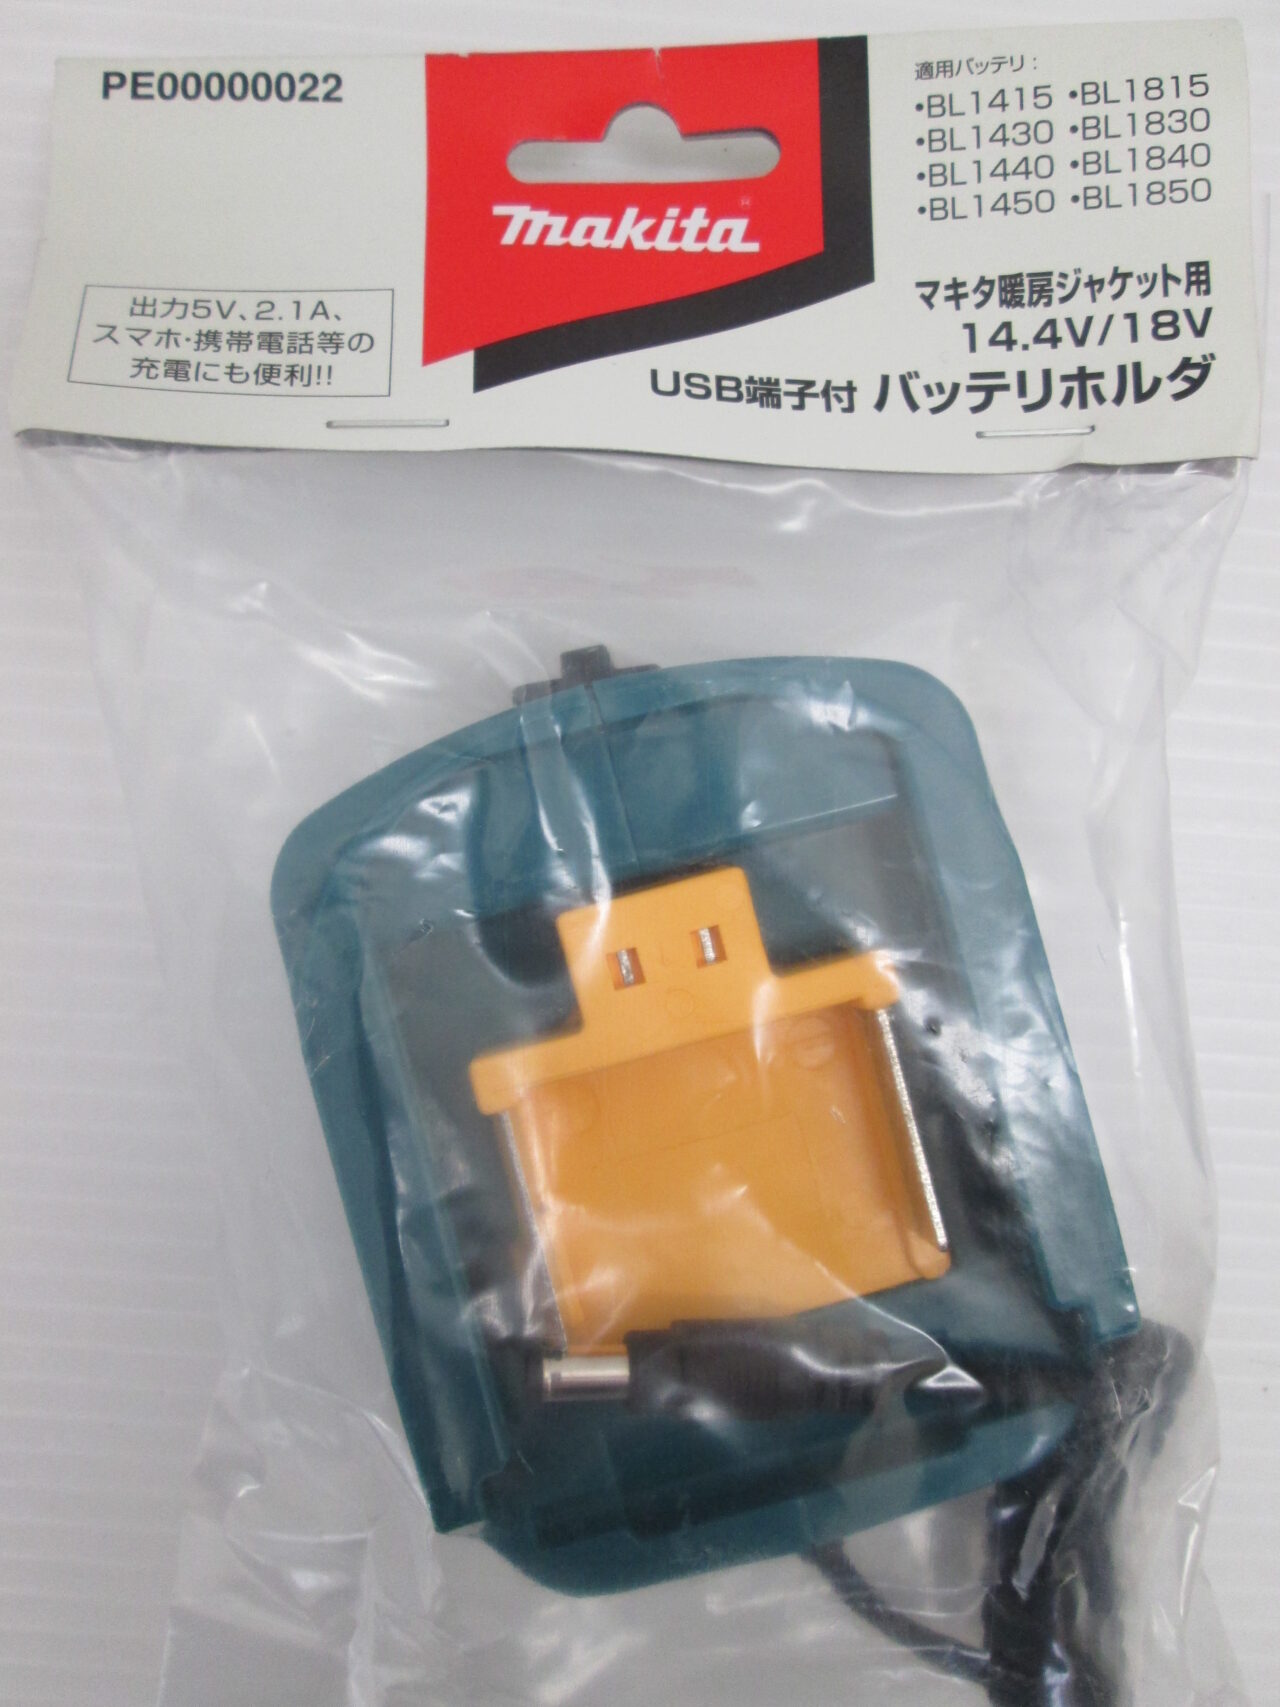 マキタ(Makita) 充電式暖房ベスト Mサイズ CV201DZM - 2